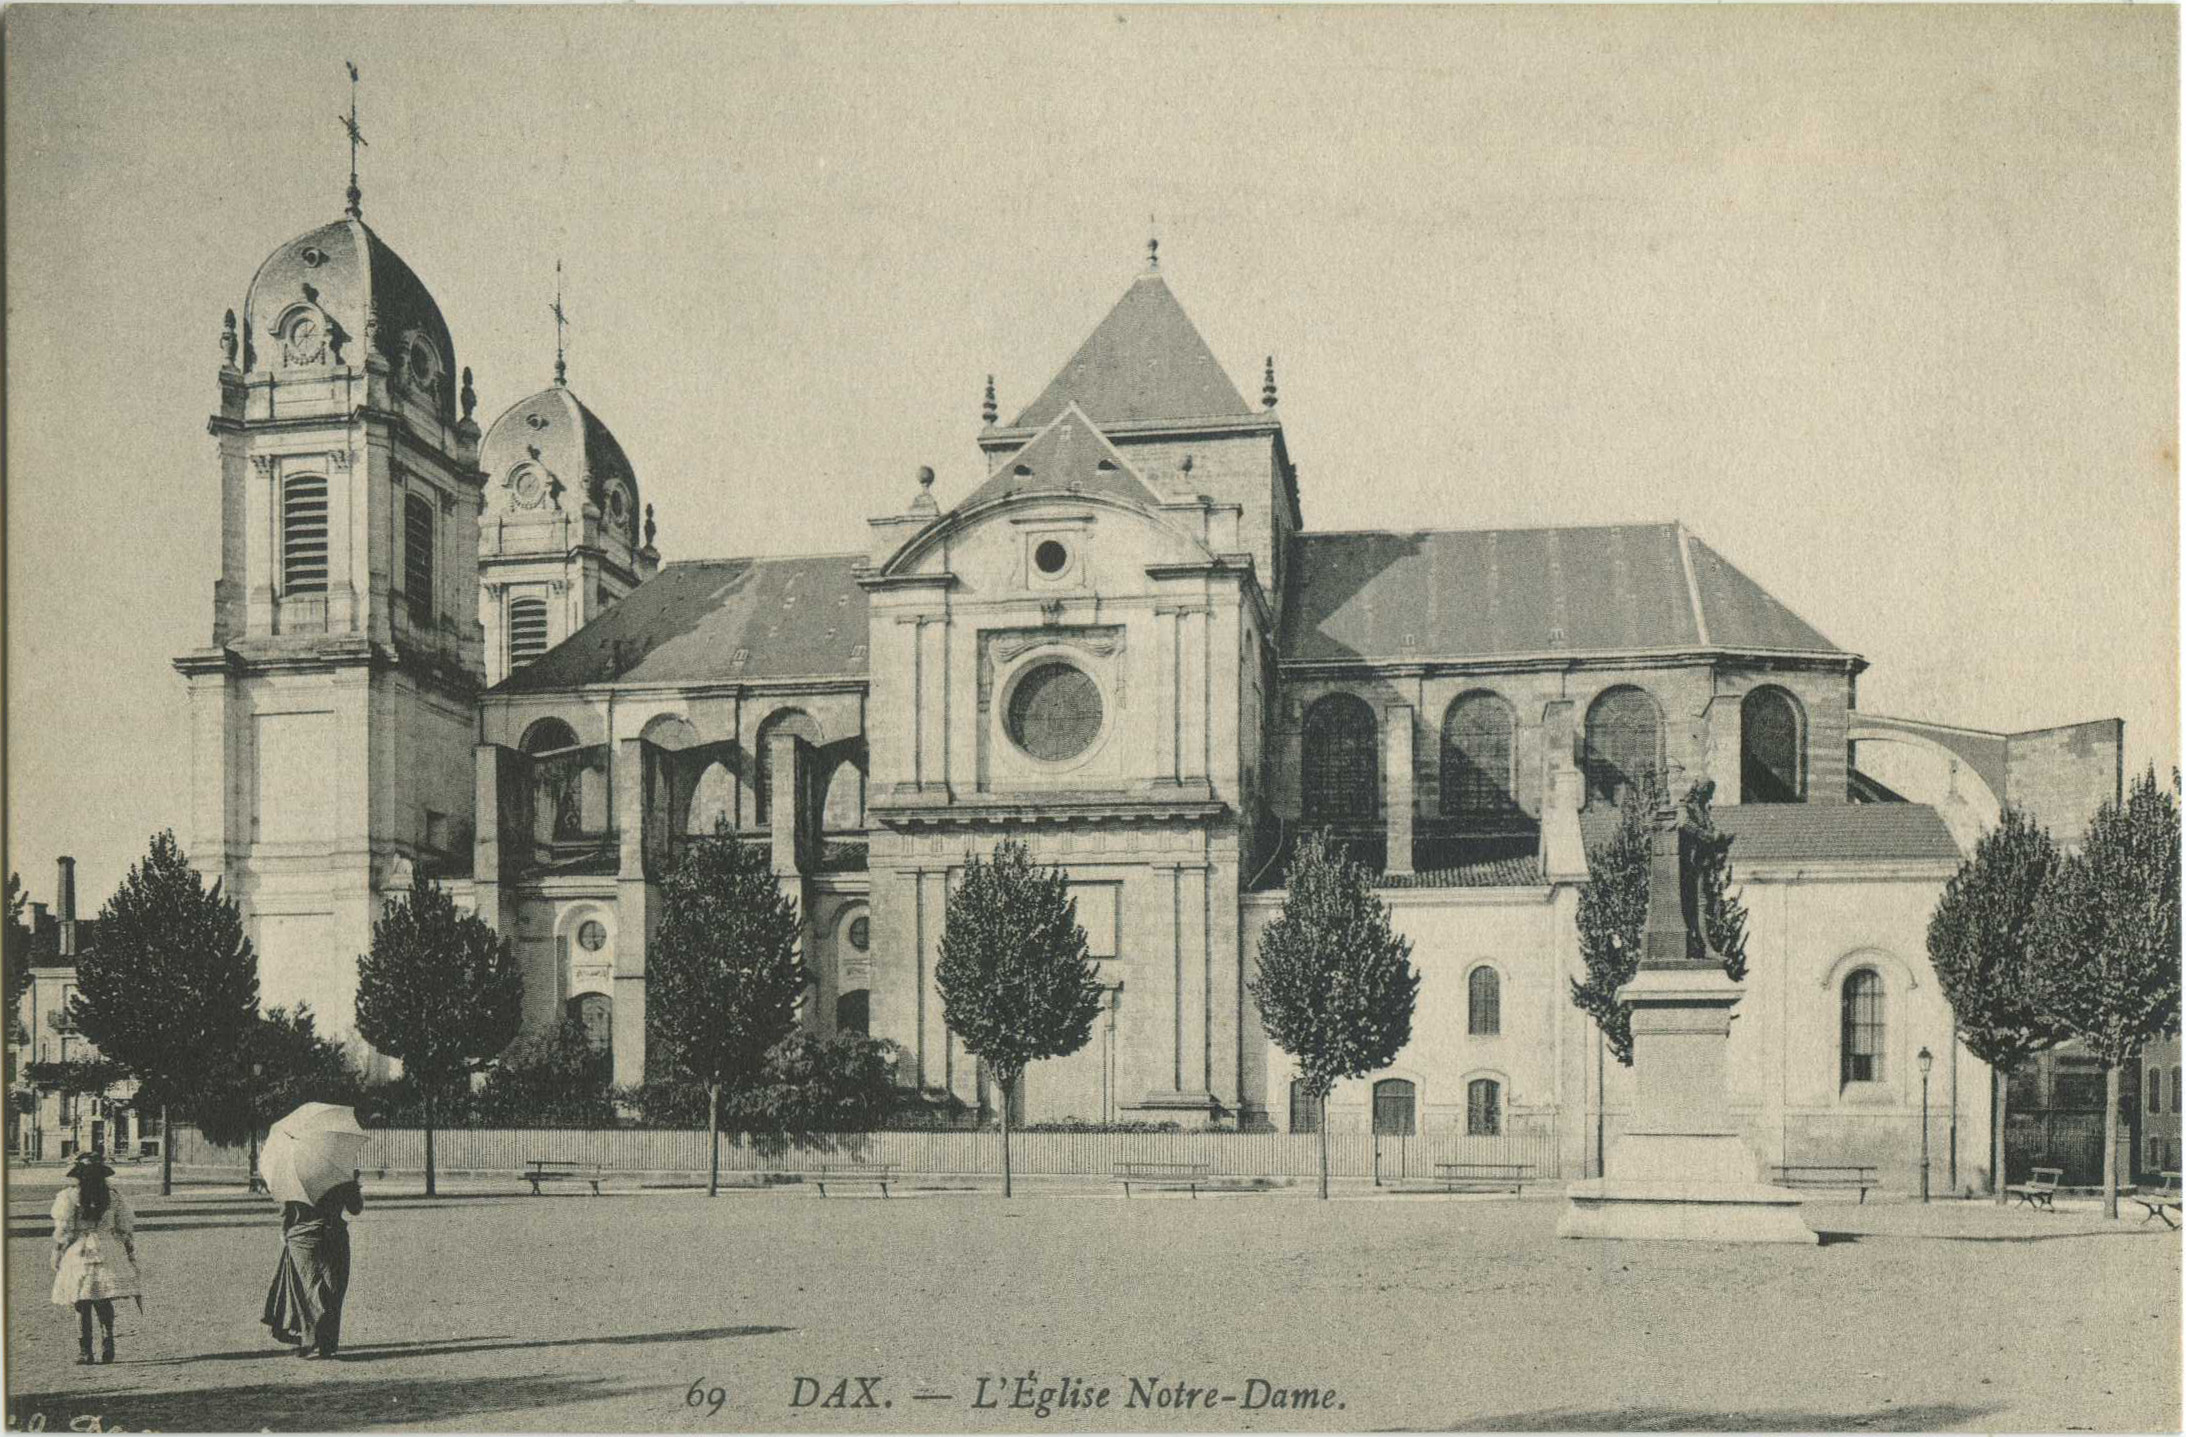 Dax - L'Église Notre-Dame.